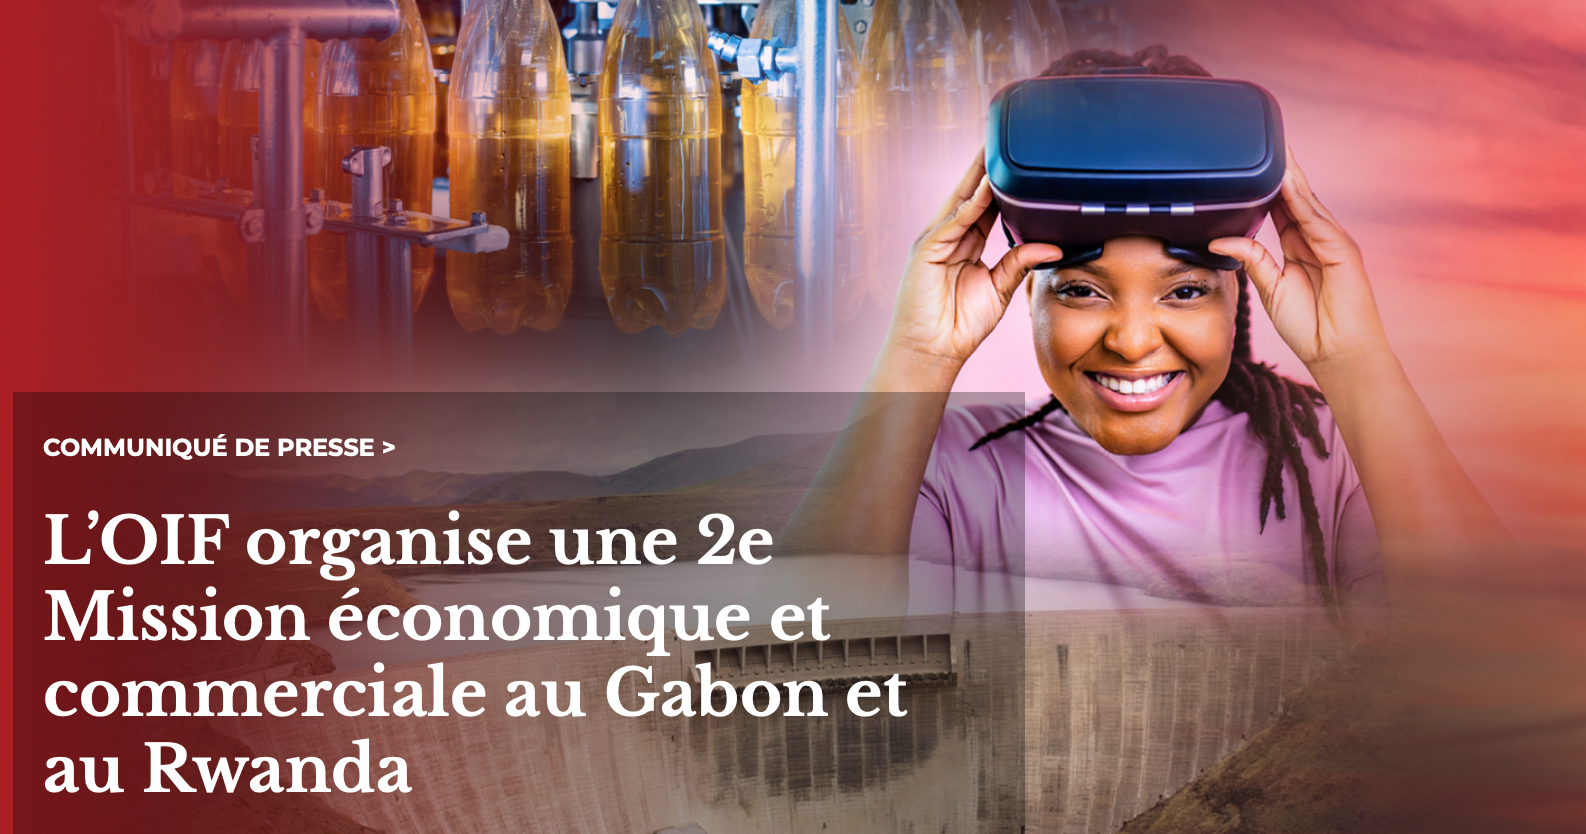 L’OIF organise une 2e Mission économique et commerciale au Gabon et au Rwanda